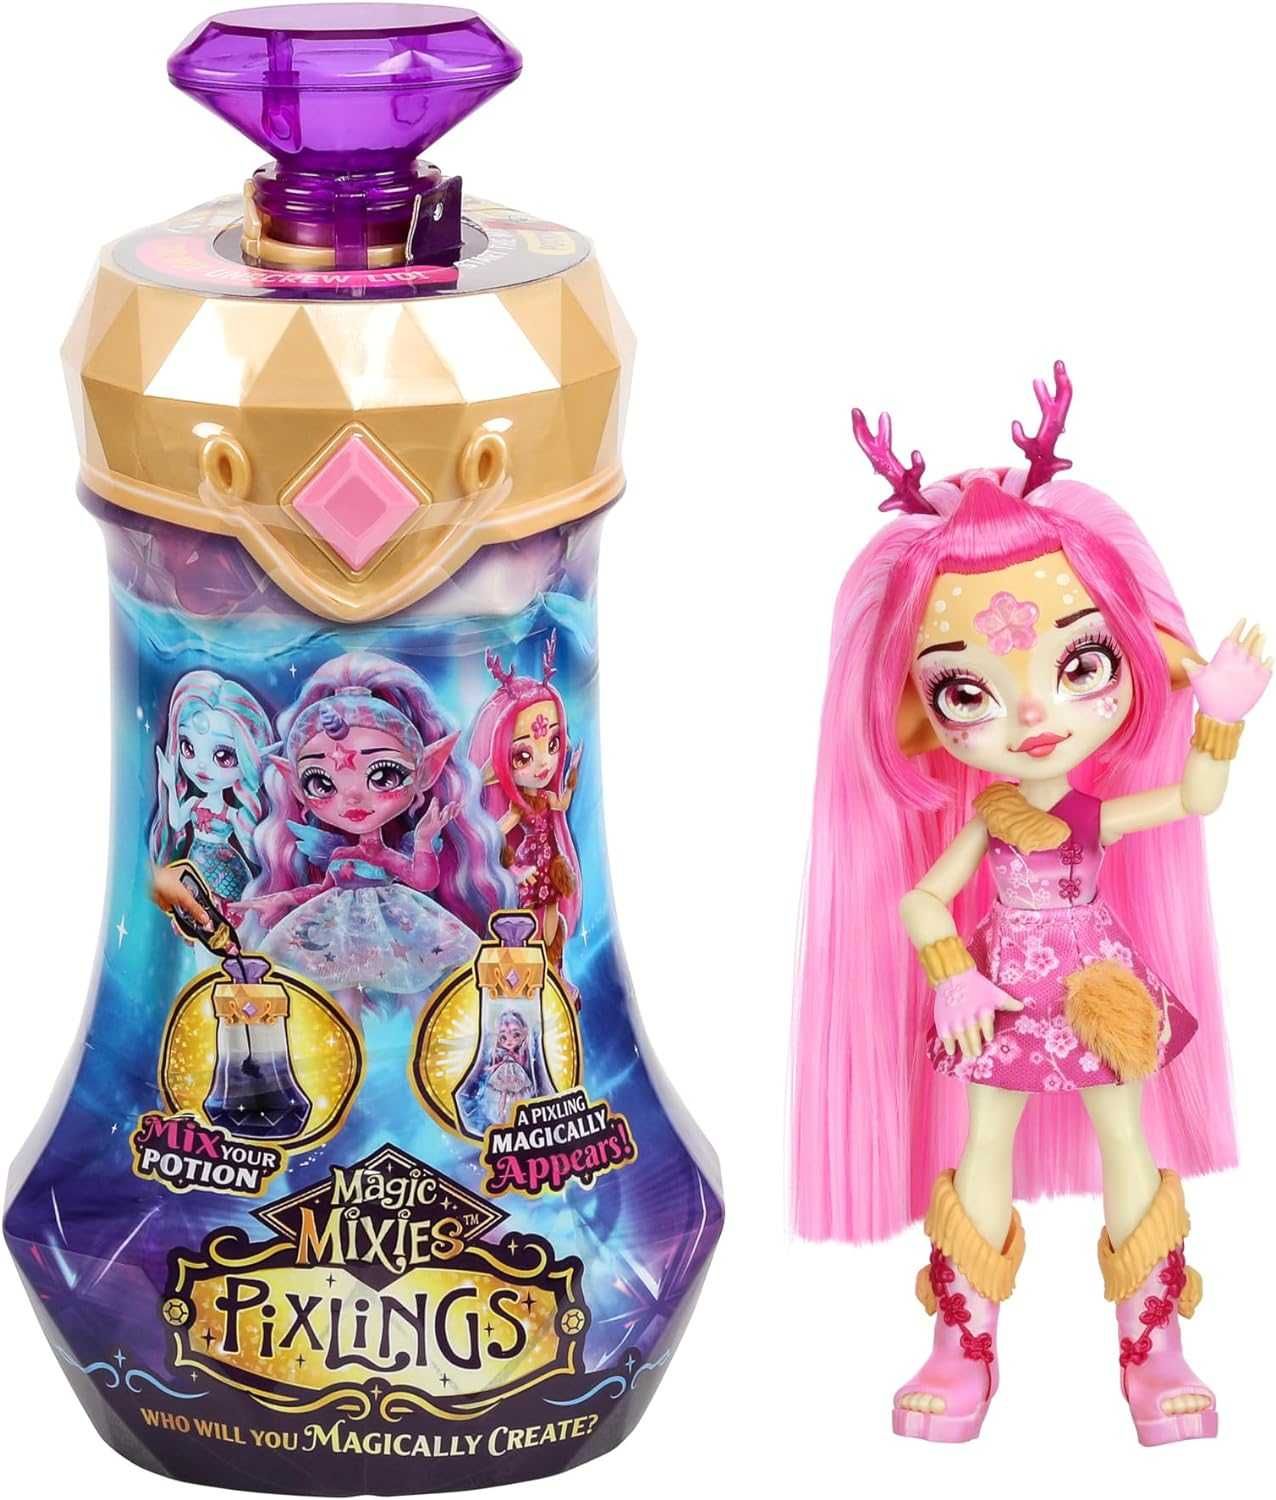 Кукла-сюрприз Magic Mixies Pixlings Deerlee, Пикслинг олень розовая